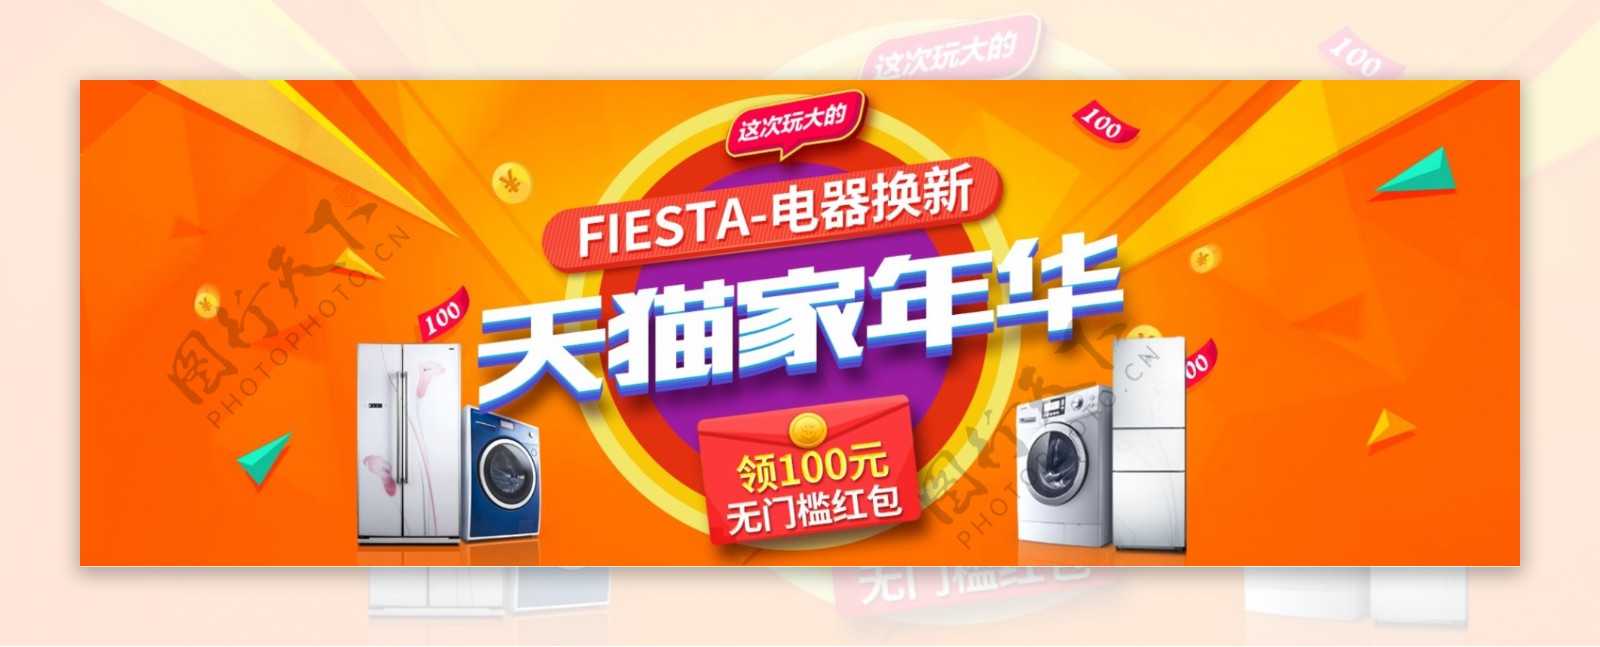 橙色促销电器家装节家年华淘宝banner电商海报